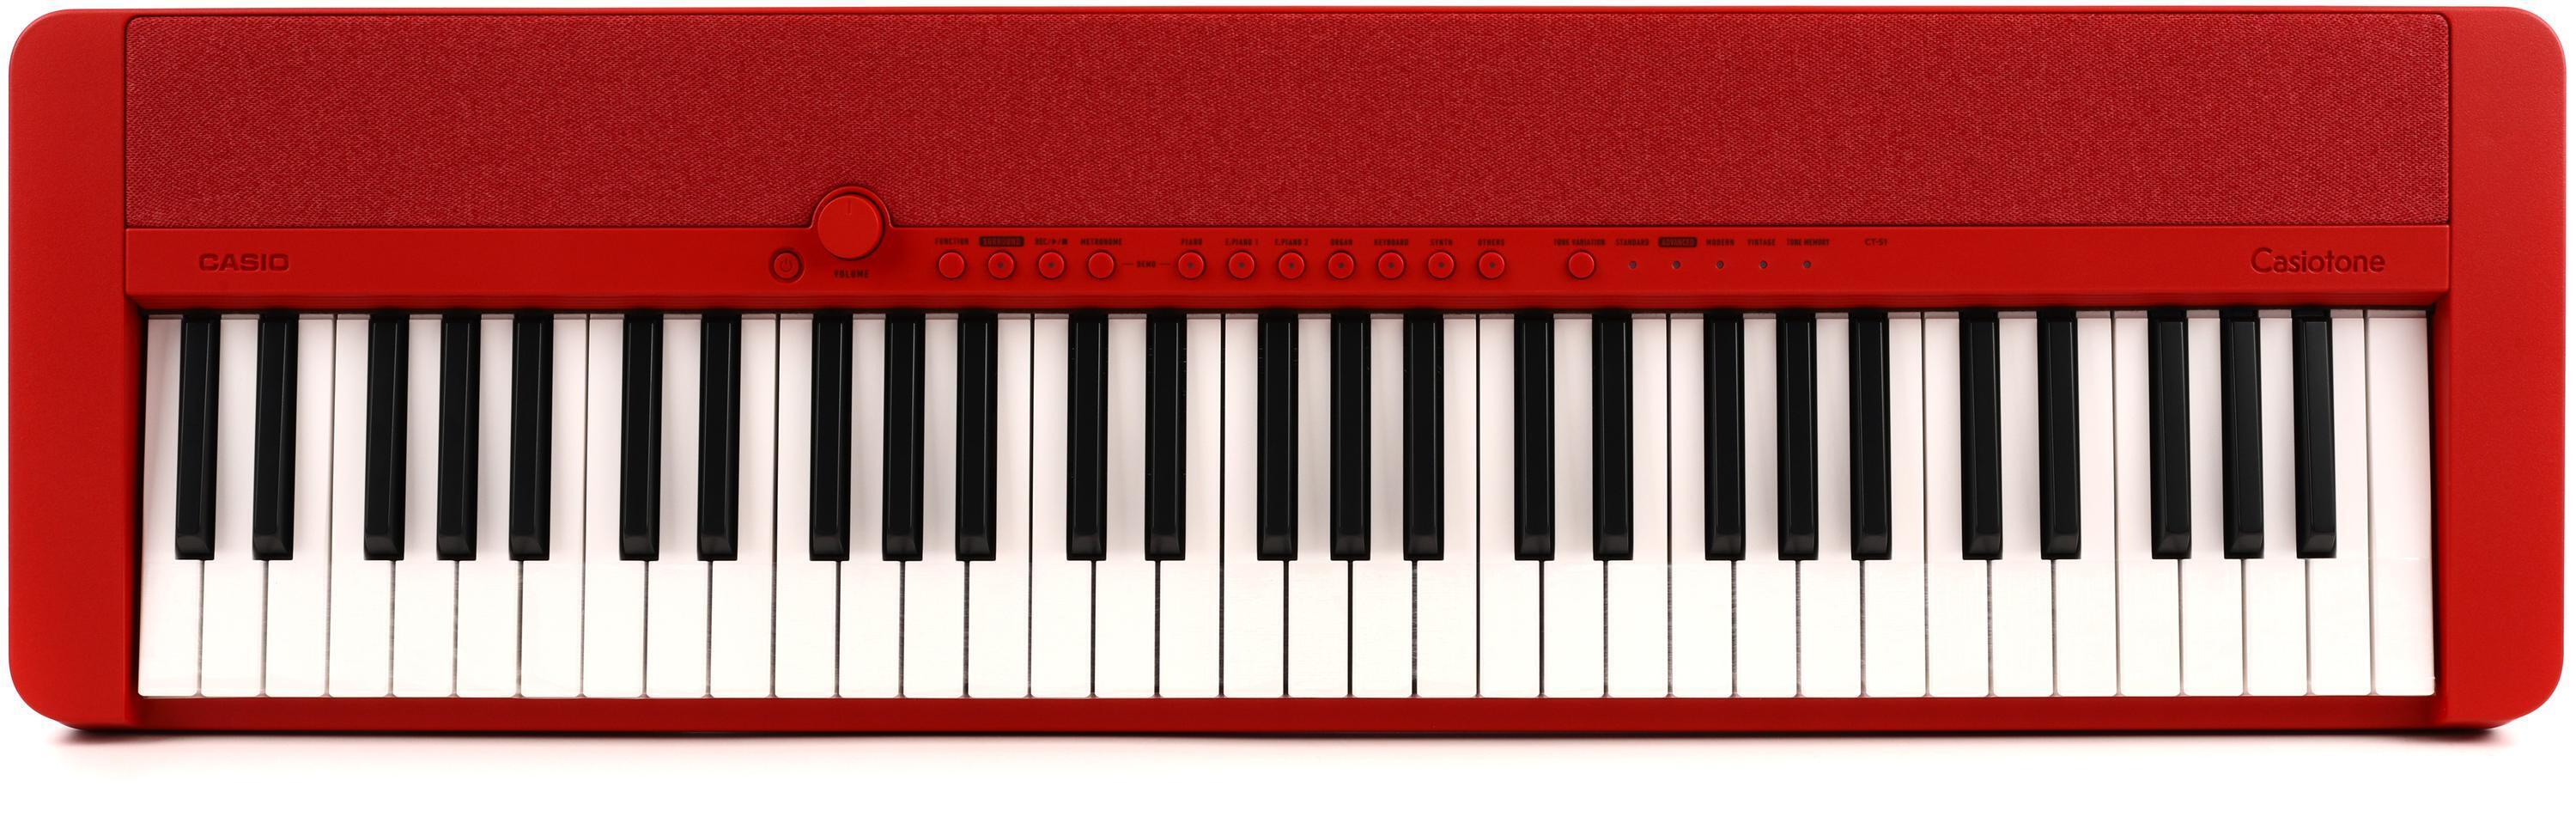 Bundled Item: Casio CT-S1 61-key Portable Keyboard - Red